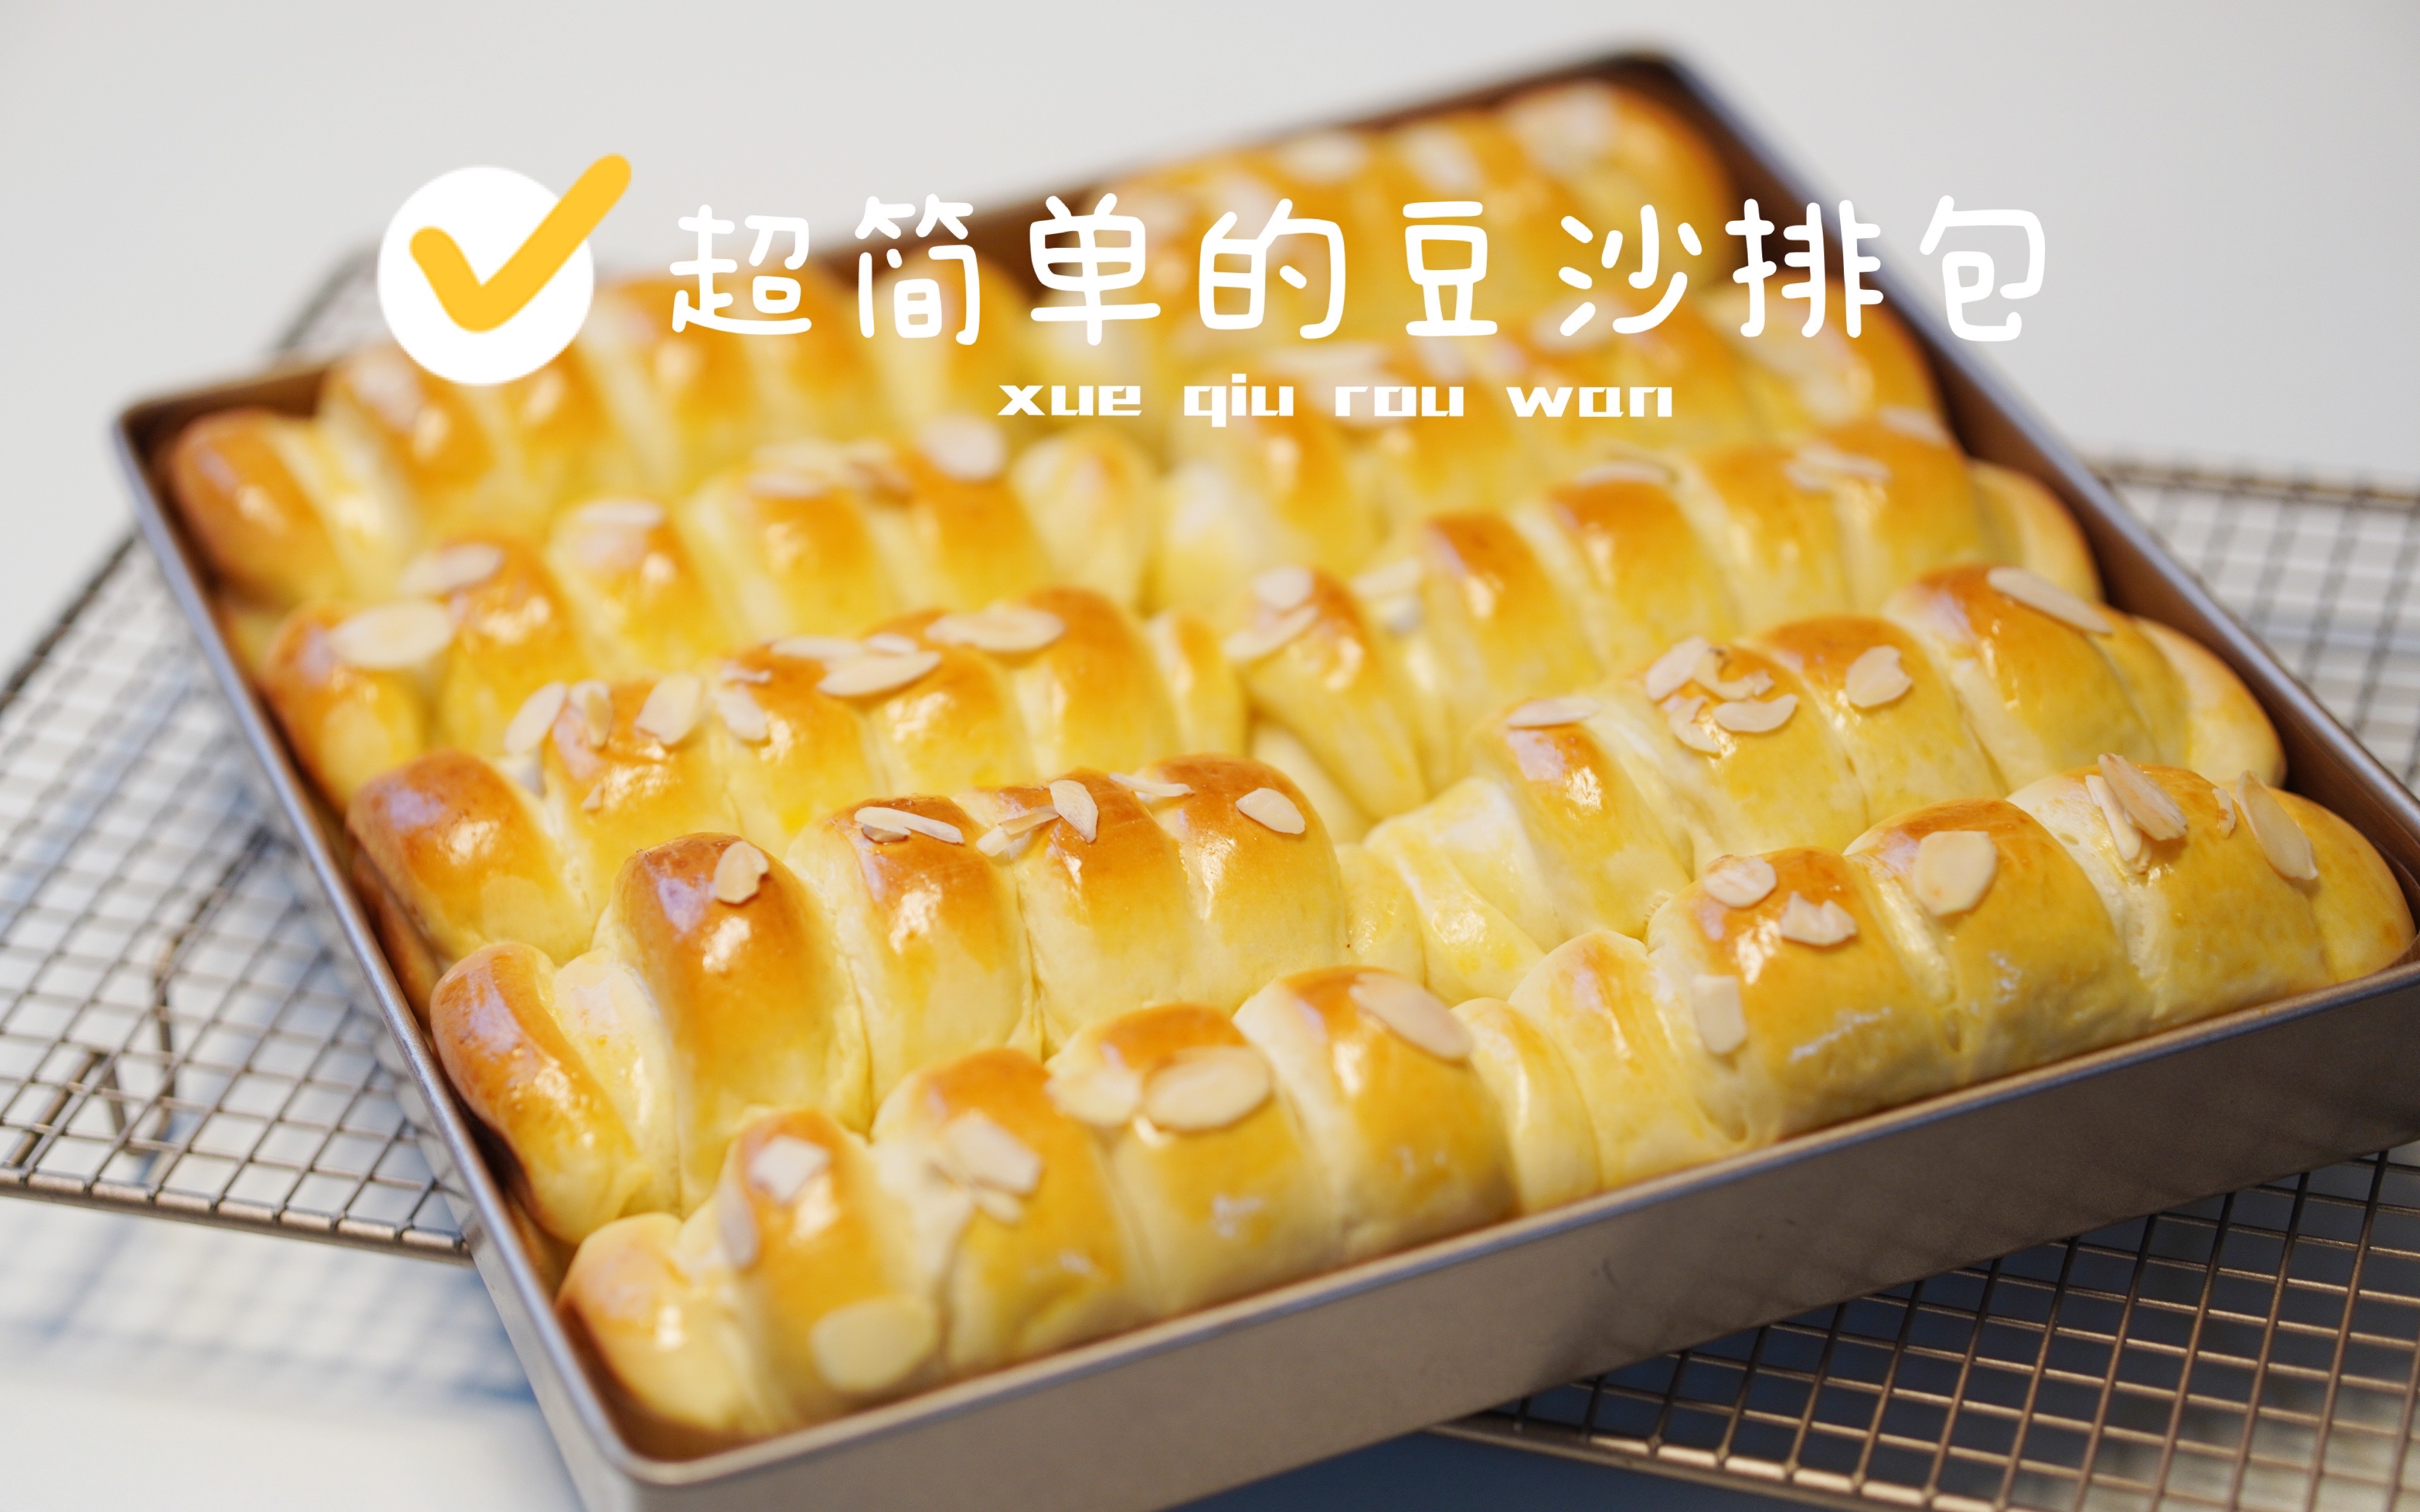 椰丝豆沙面包 东北特产老式清真厂早餐夜宵德惠传统糕点夹心食品_ifengzi278424333